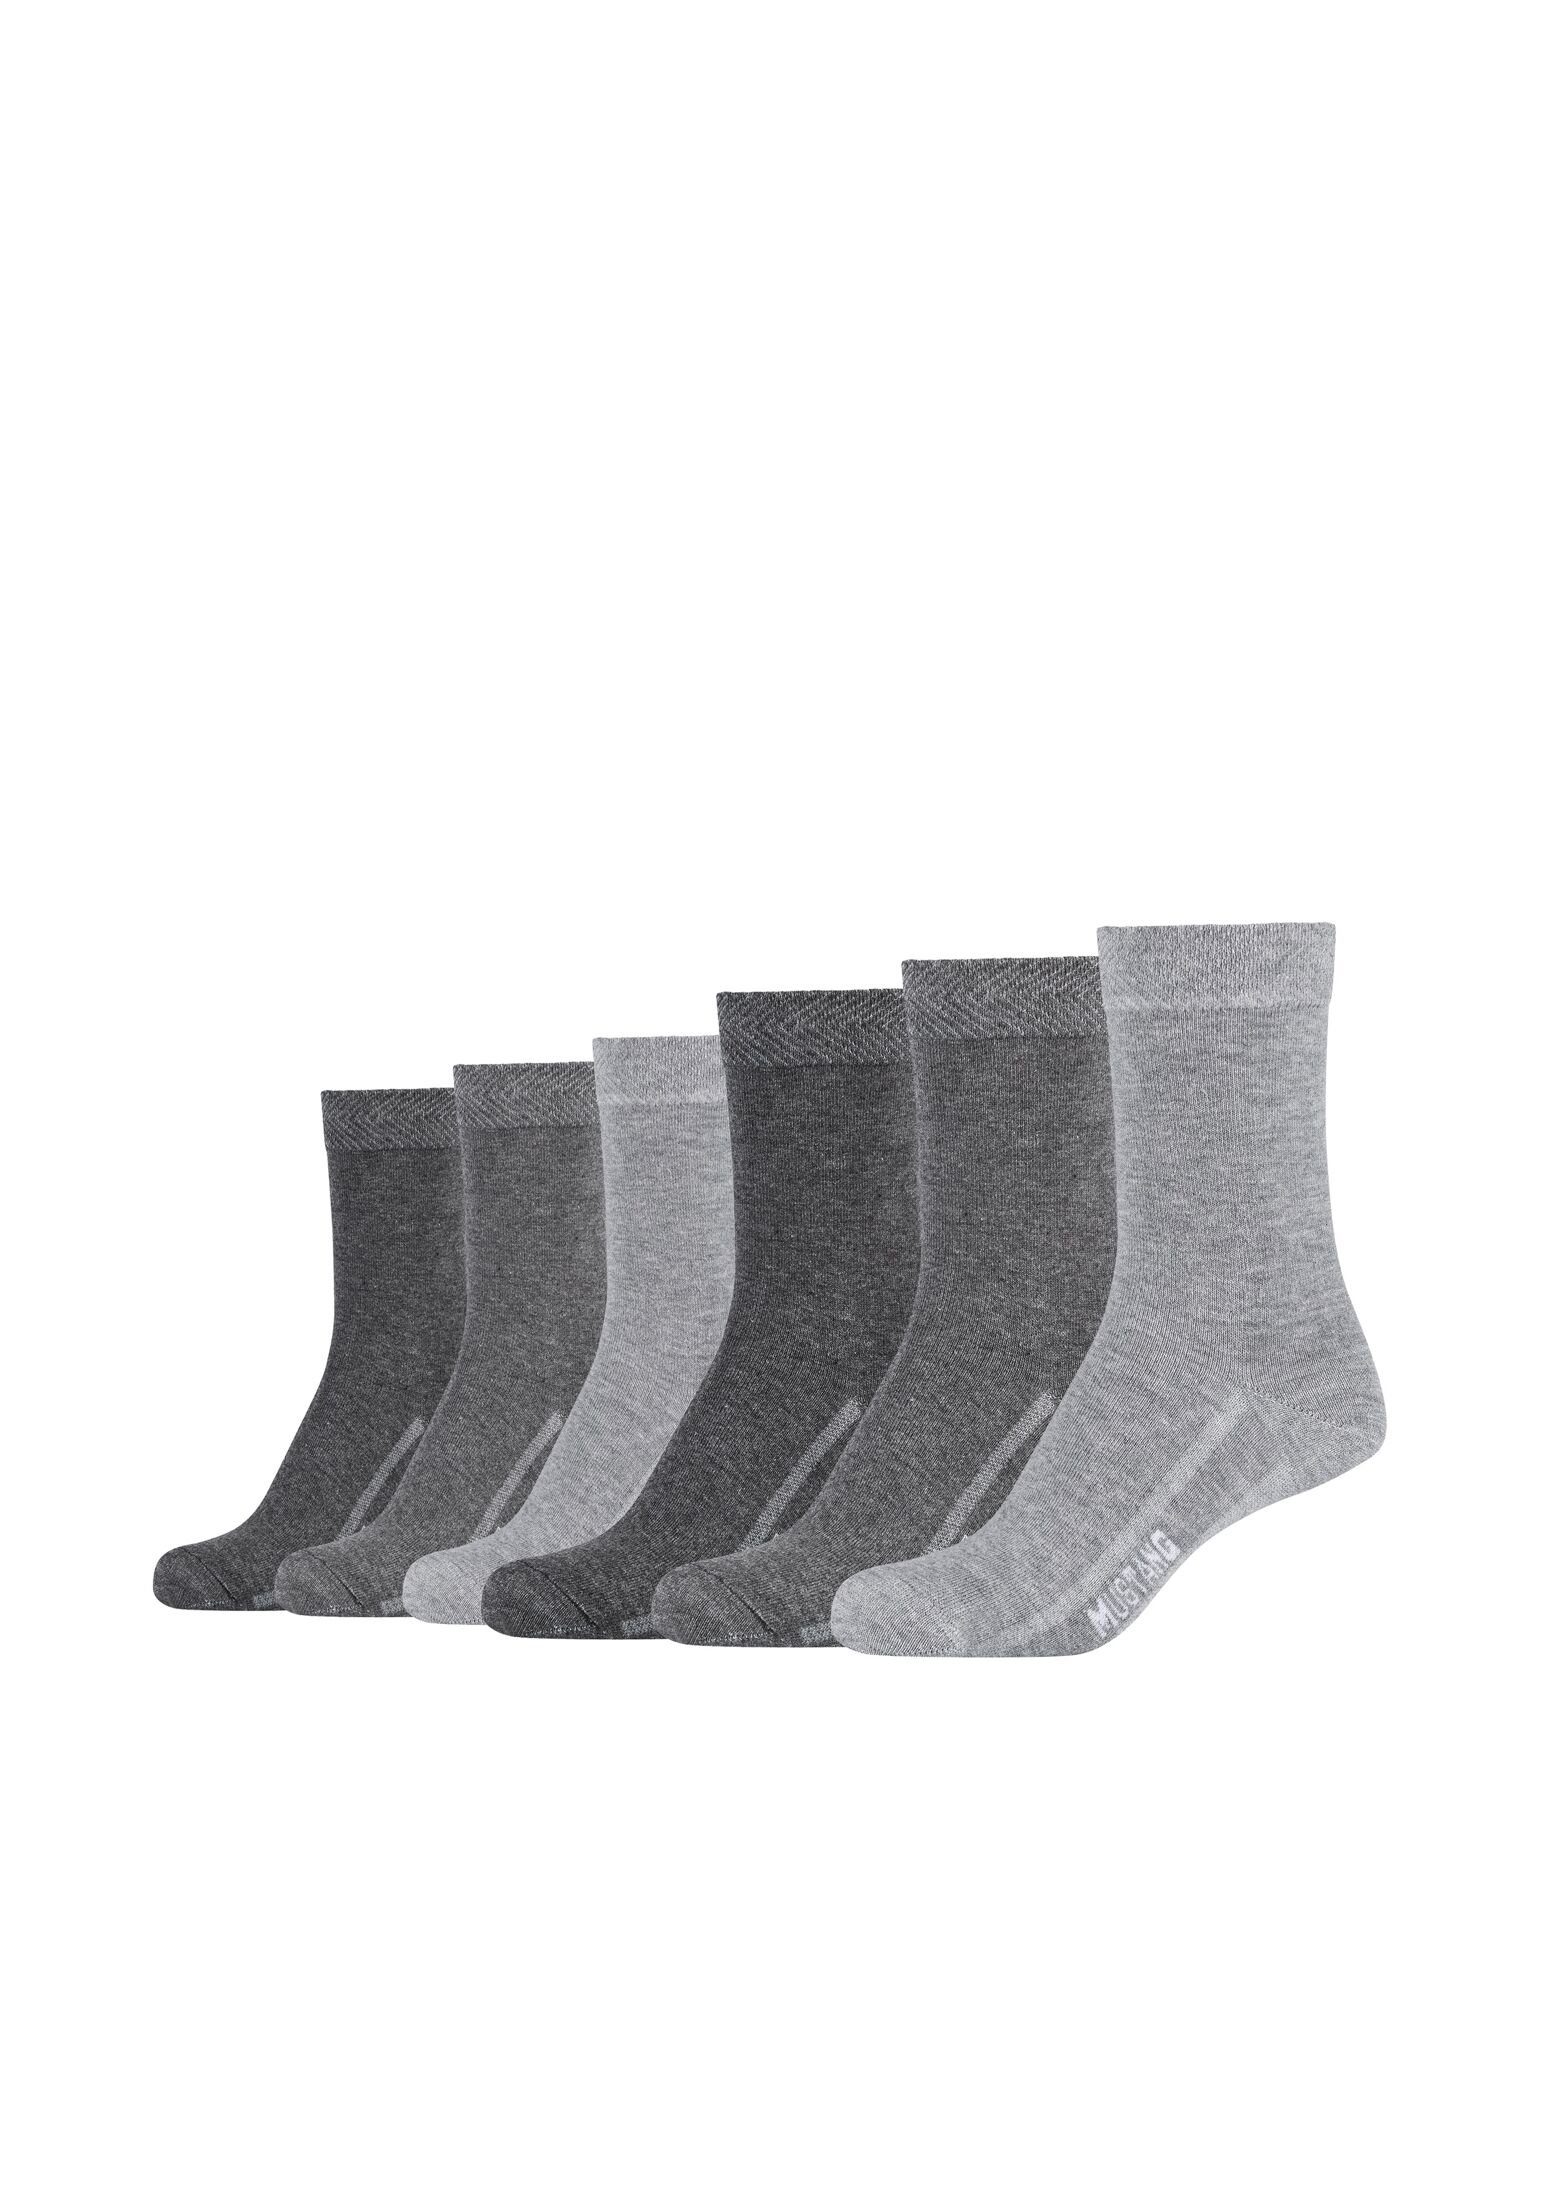 MUSTANG Socken Socken 6er Pack fog mix